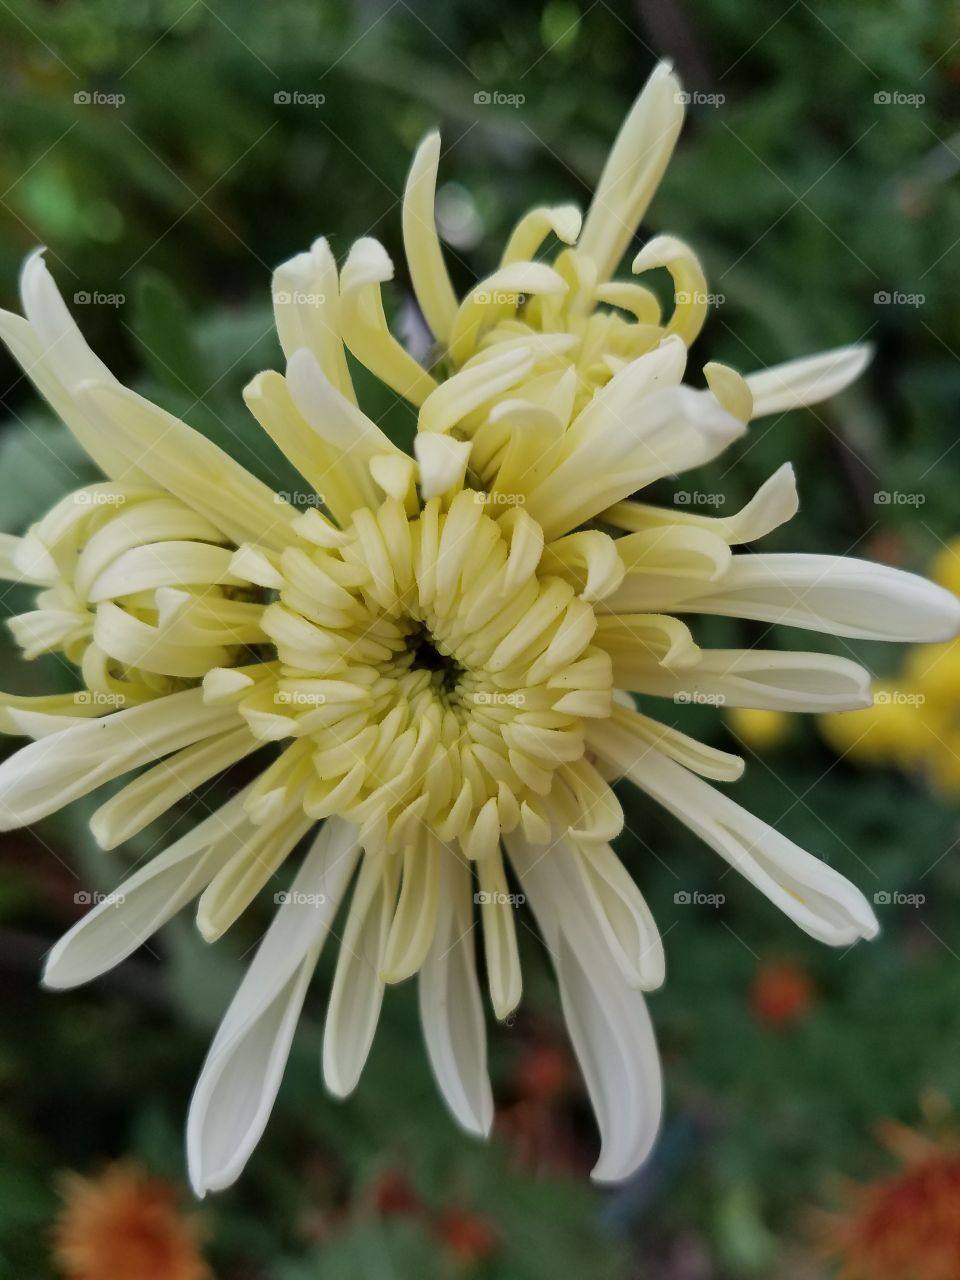 yellow spider chrysanthemum